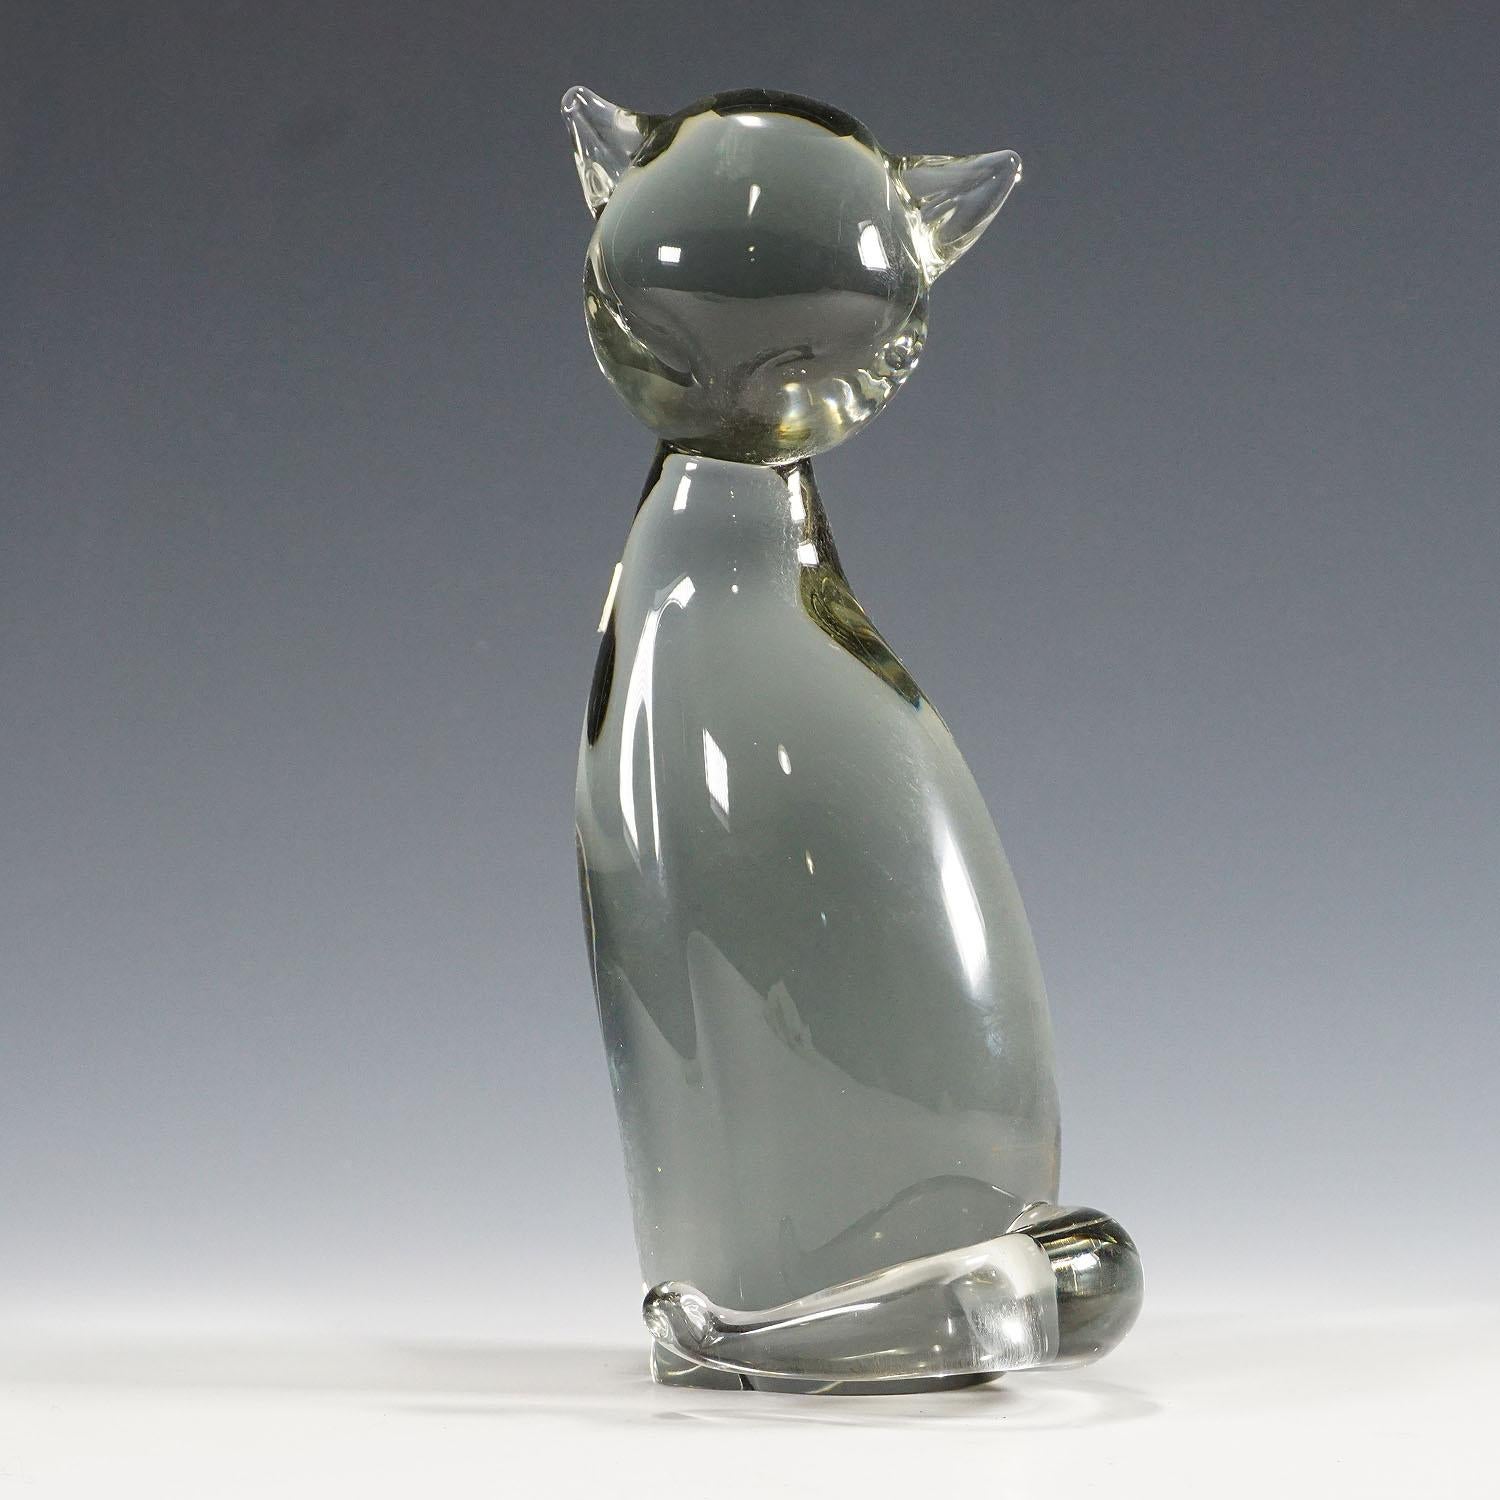 Skulptur einer stilisierten Katze Entworfen von Livio Seguso ca. 1970er Jahre

Eine niedliche Skulptur einer stilisierten Katze in rauchgrauem Glas. Handgefertigt in der Glasmanufaktur Gral, Deutschland. Es wurde von Livio Seguso um 1970 entworfen.